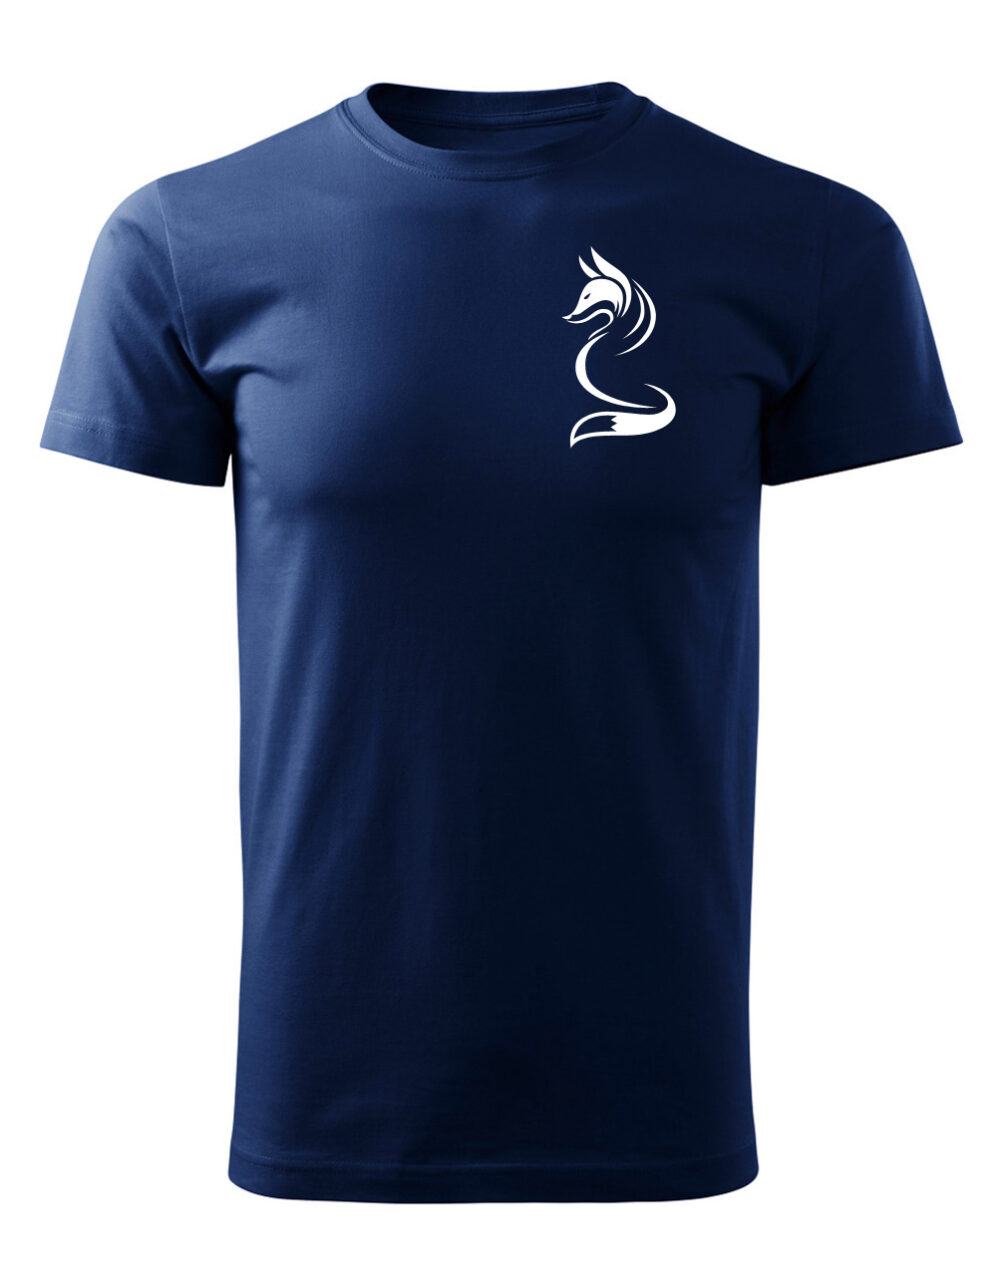 Pánské tričko s potiskem Liška námořnická modrá